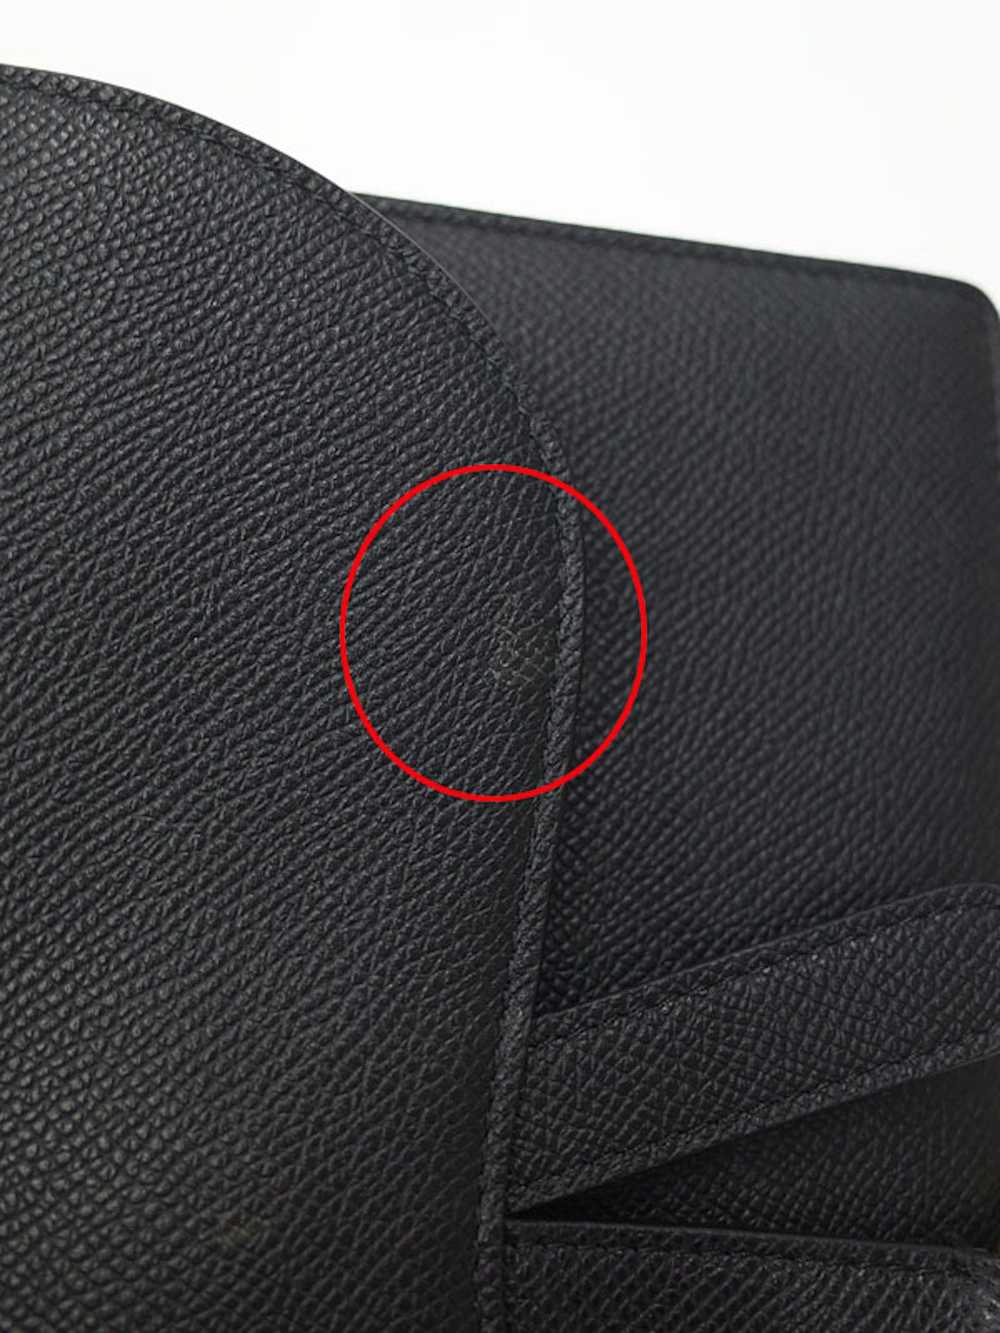 Dior Dior Saddle Bag Shoulder Leather Black - image 6